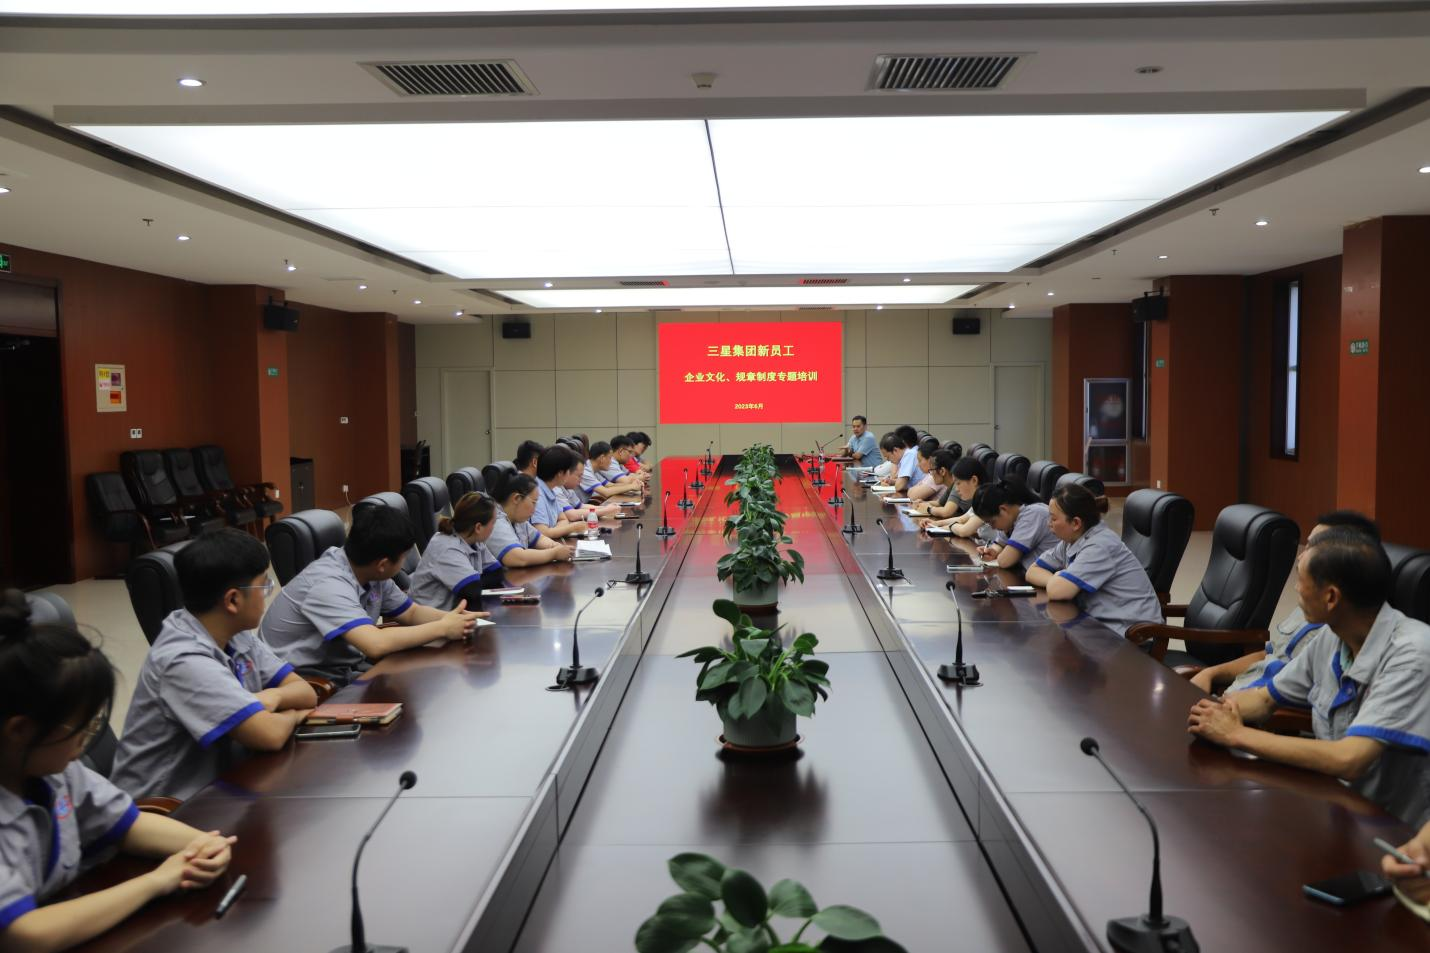 山东维多利亚vic67中国线路集团组织新员工专题培训